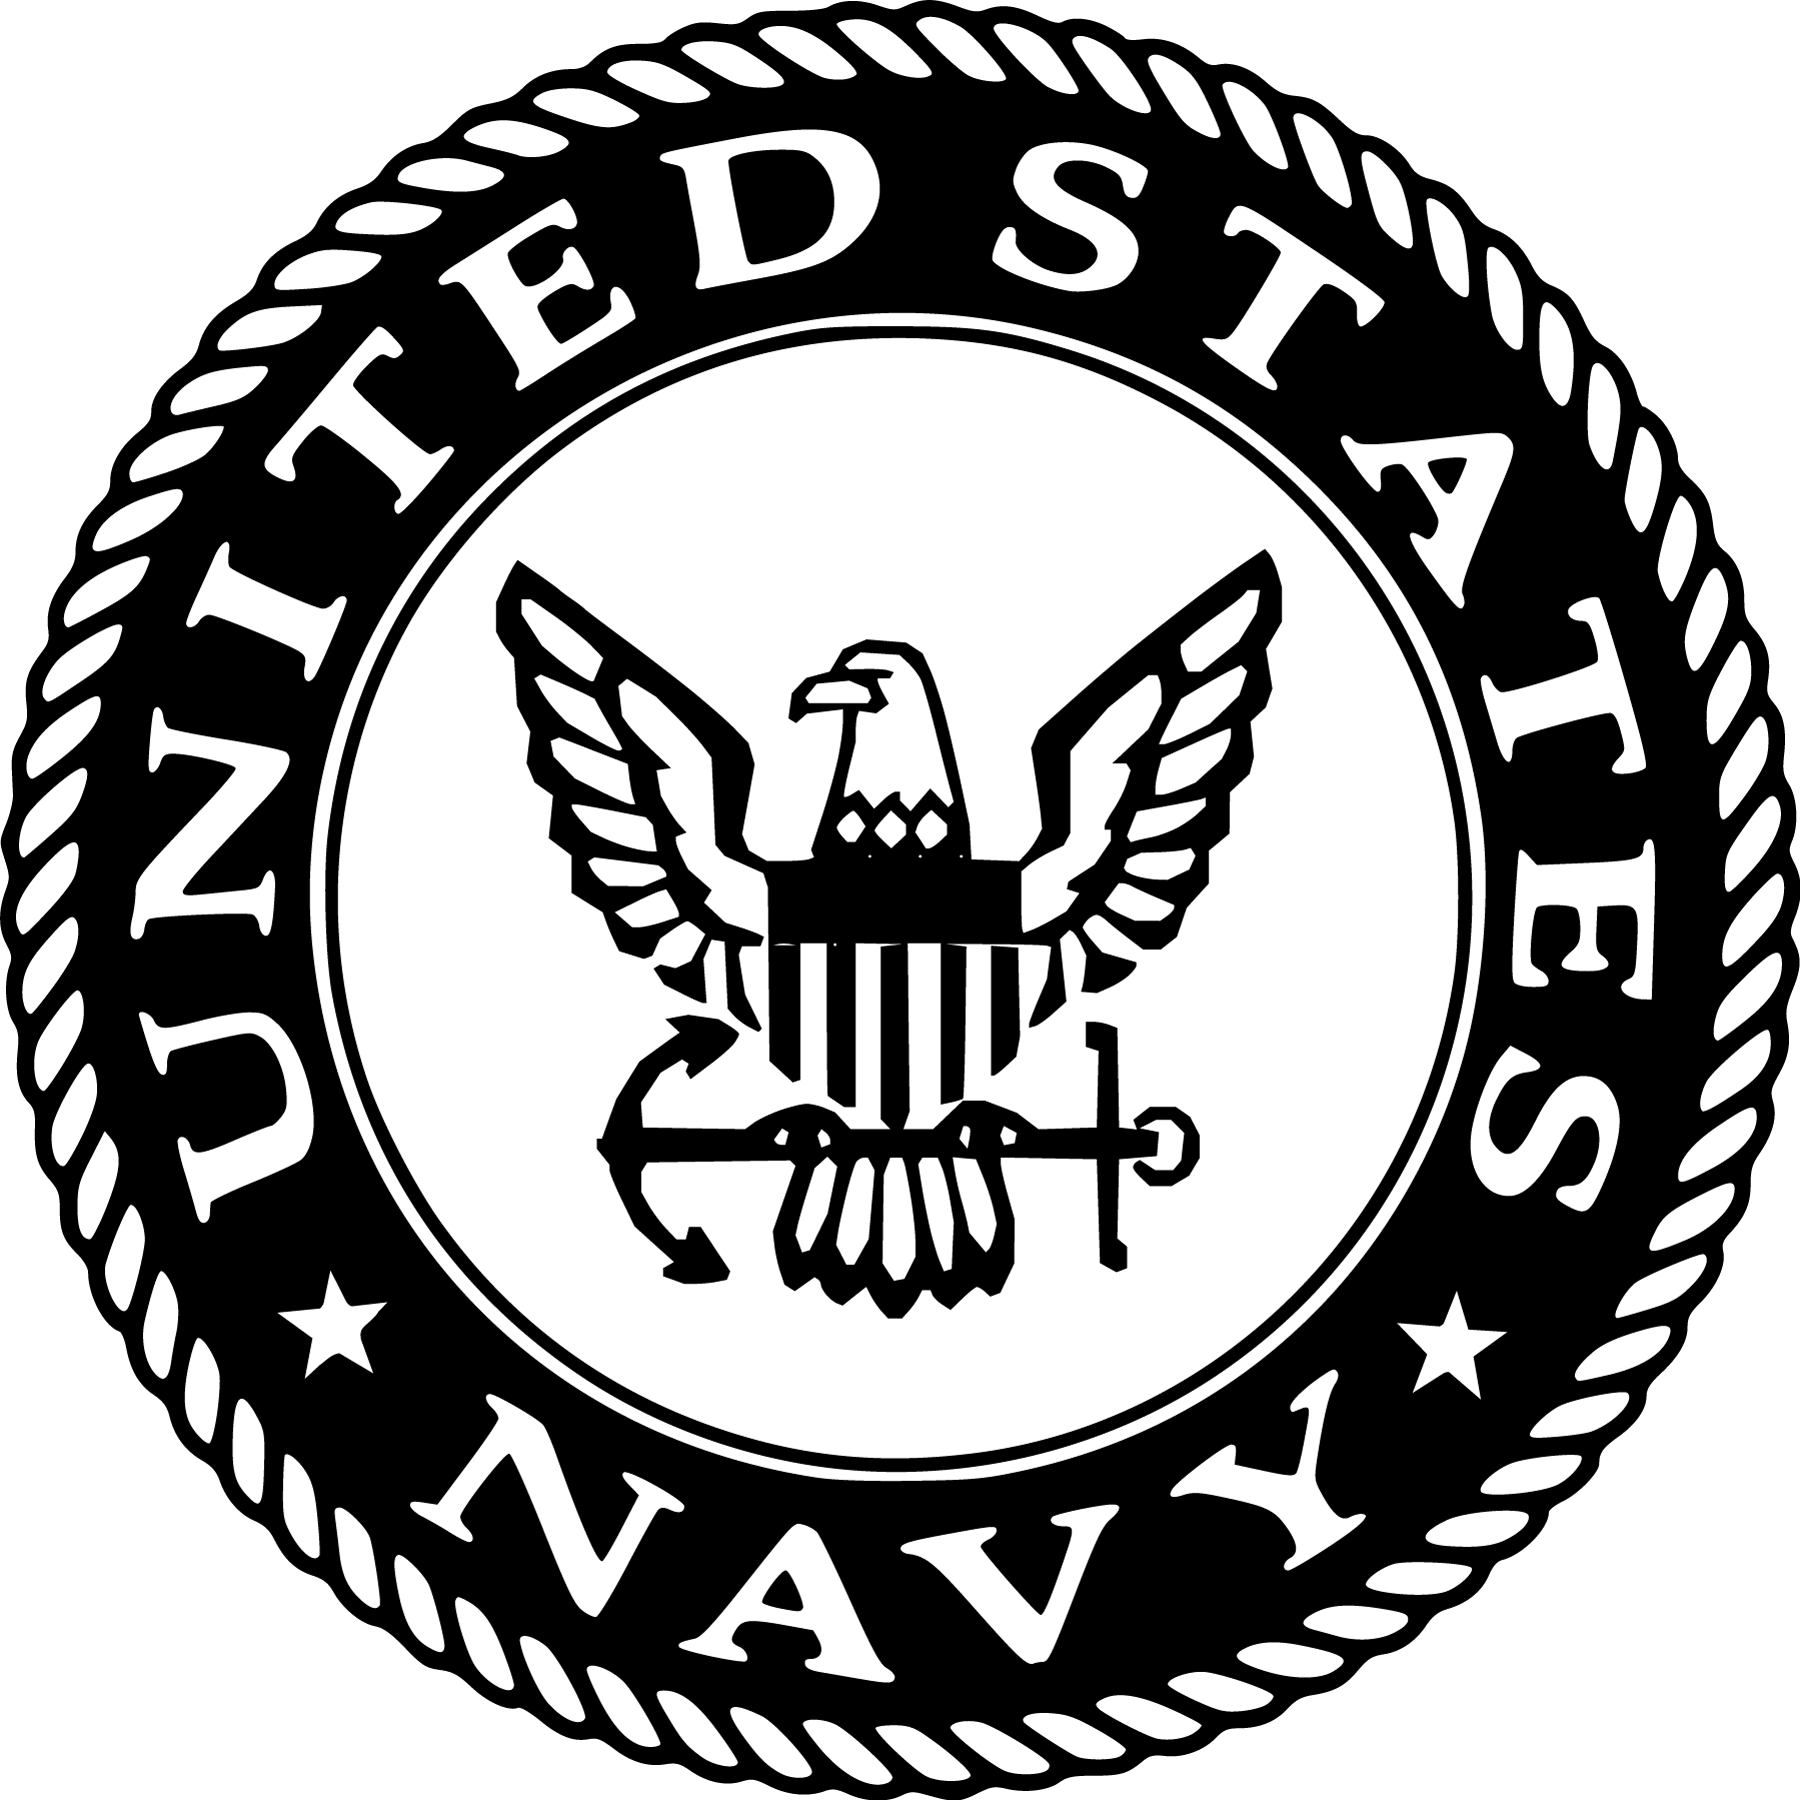 Military Service Verification - Navy Emblem (1800x1800)